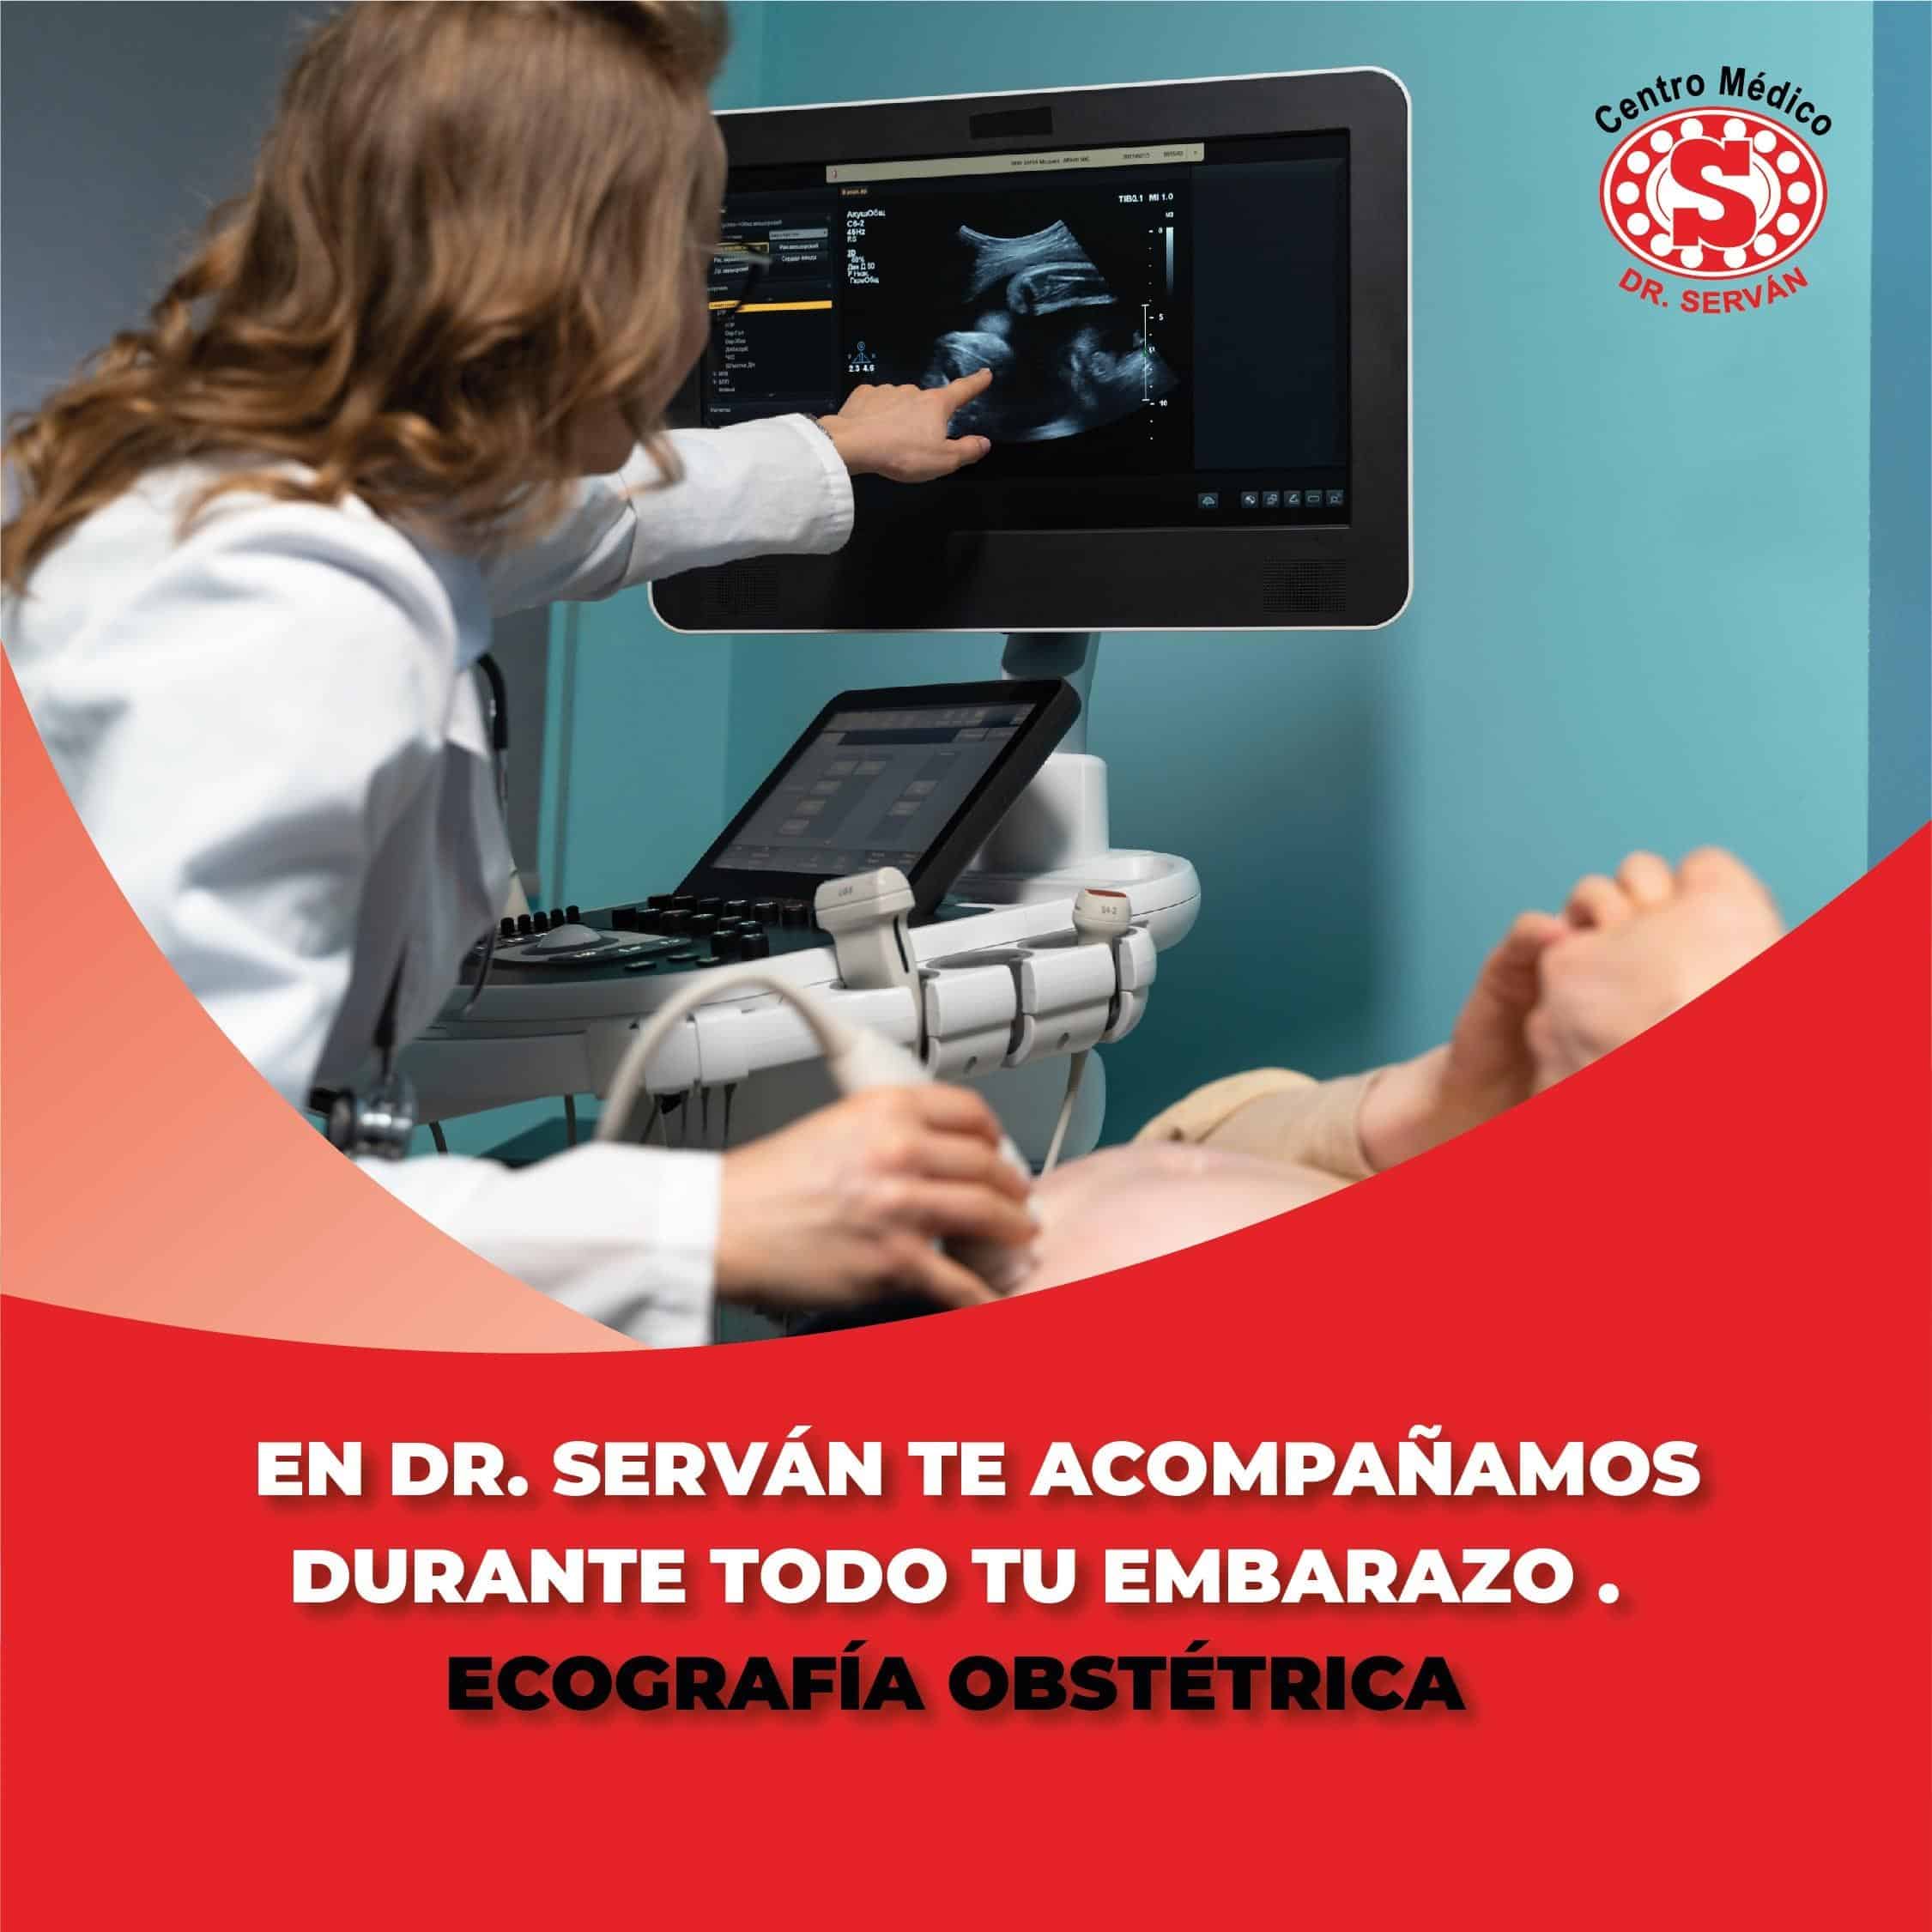 Equipos médicos para ecografía obstétrica: calidad y precisión